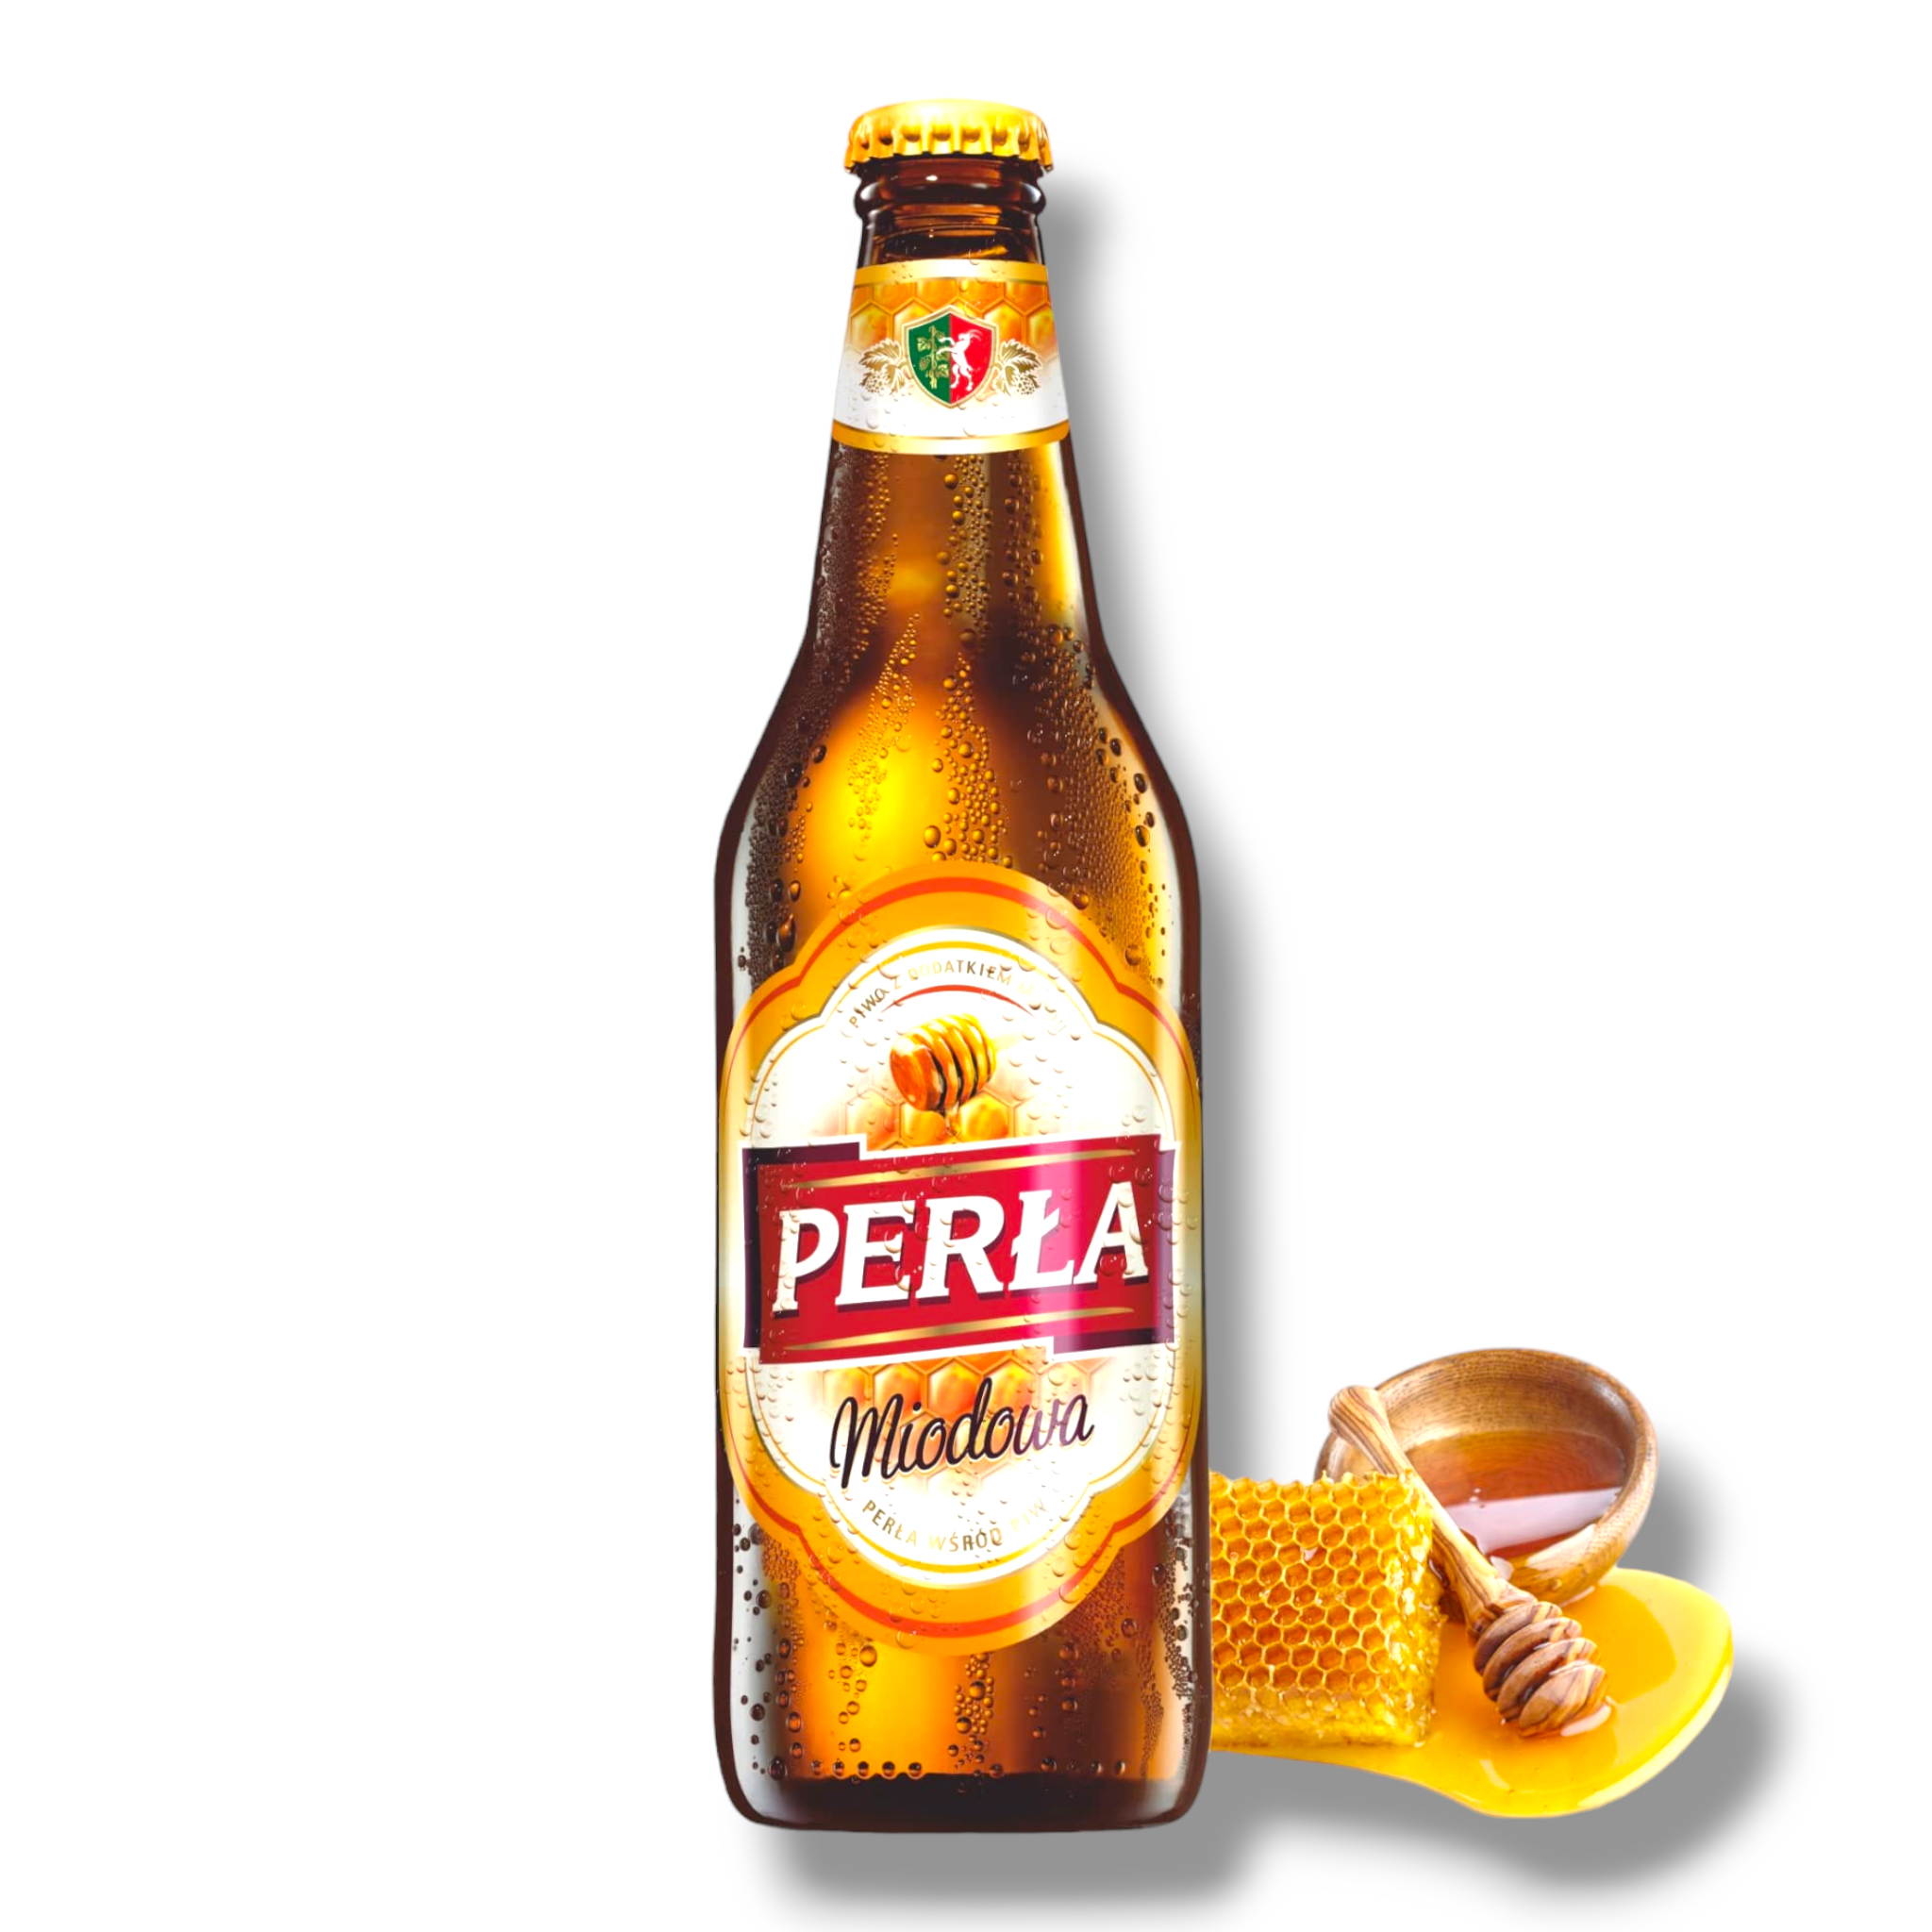 Perla Miodowa Bier 0,5l- Honigbier aus Polen in der Flasche mit 6% Vol.